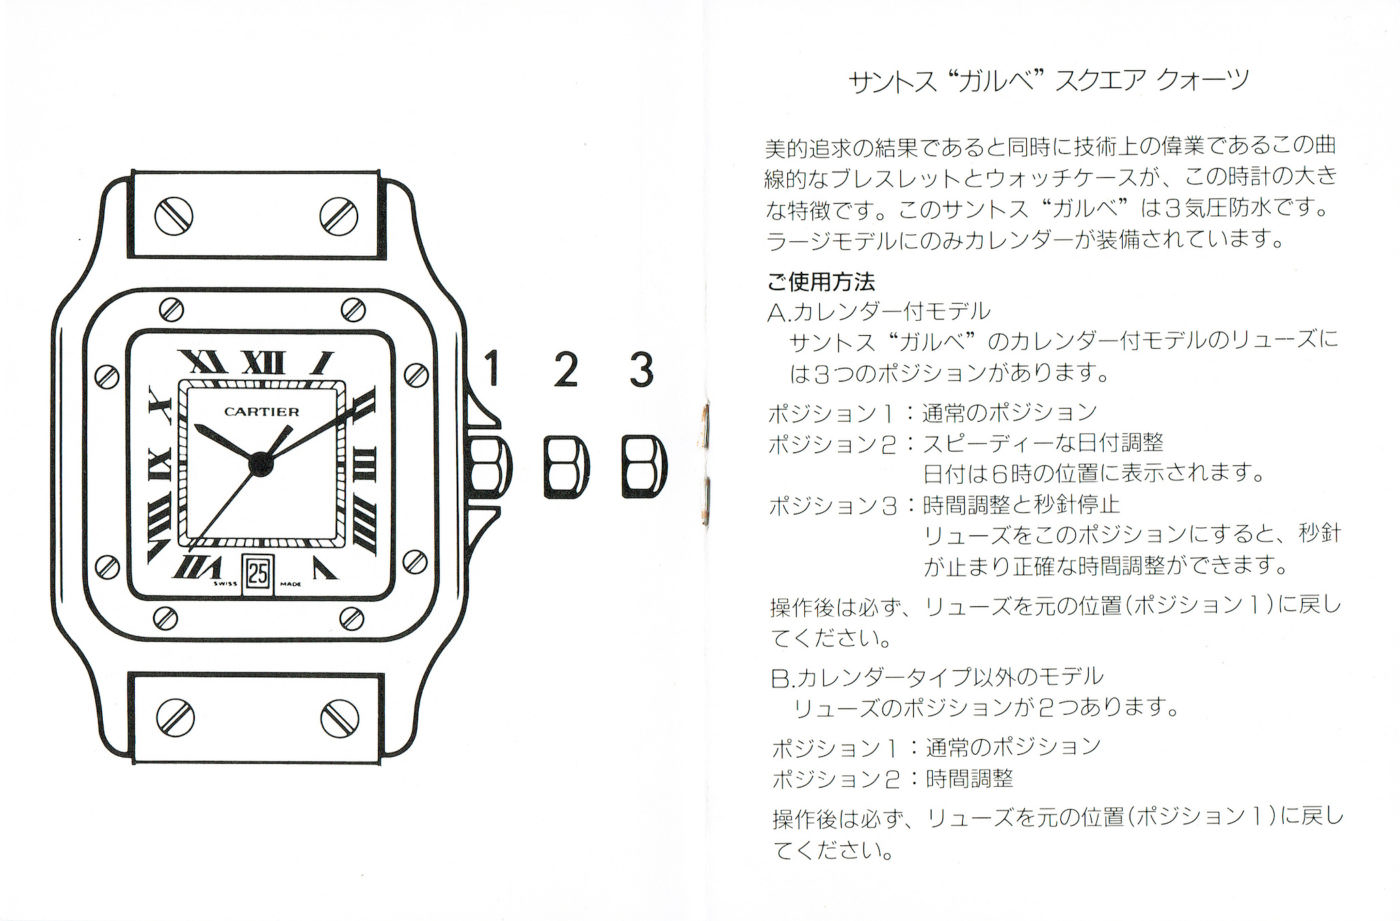 Cartier カルティエ 時計の操作マニュアル – ARBITRO